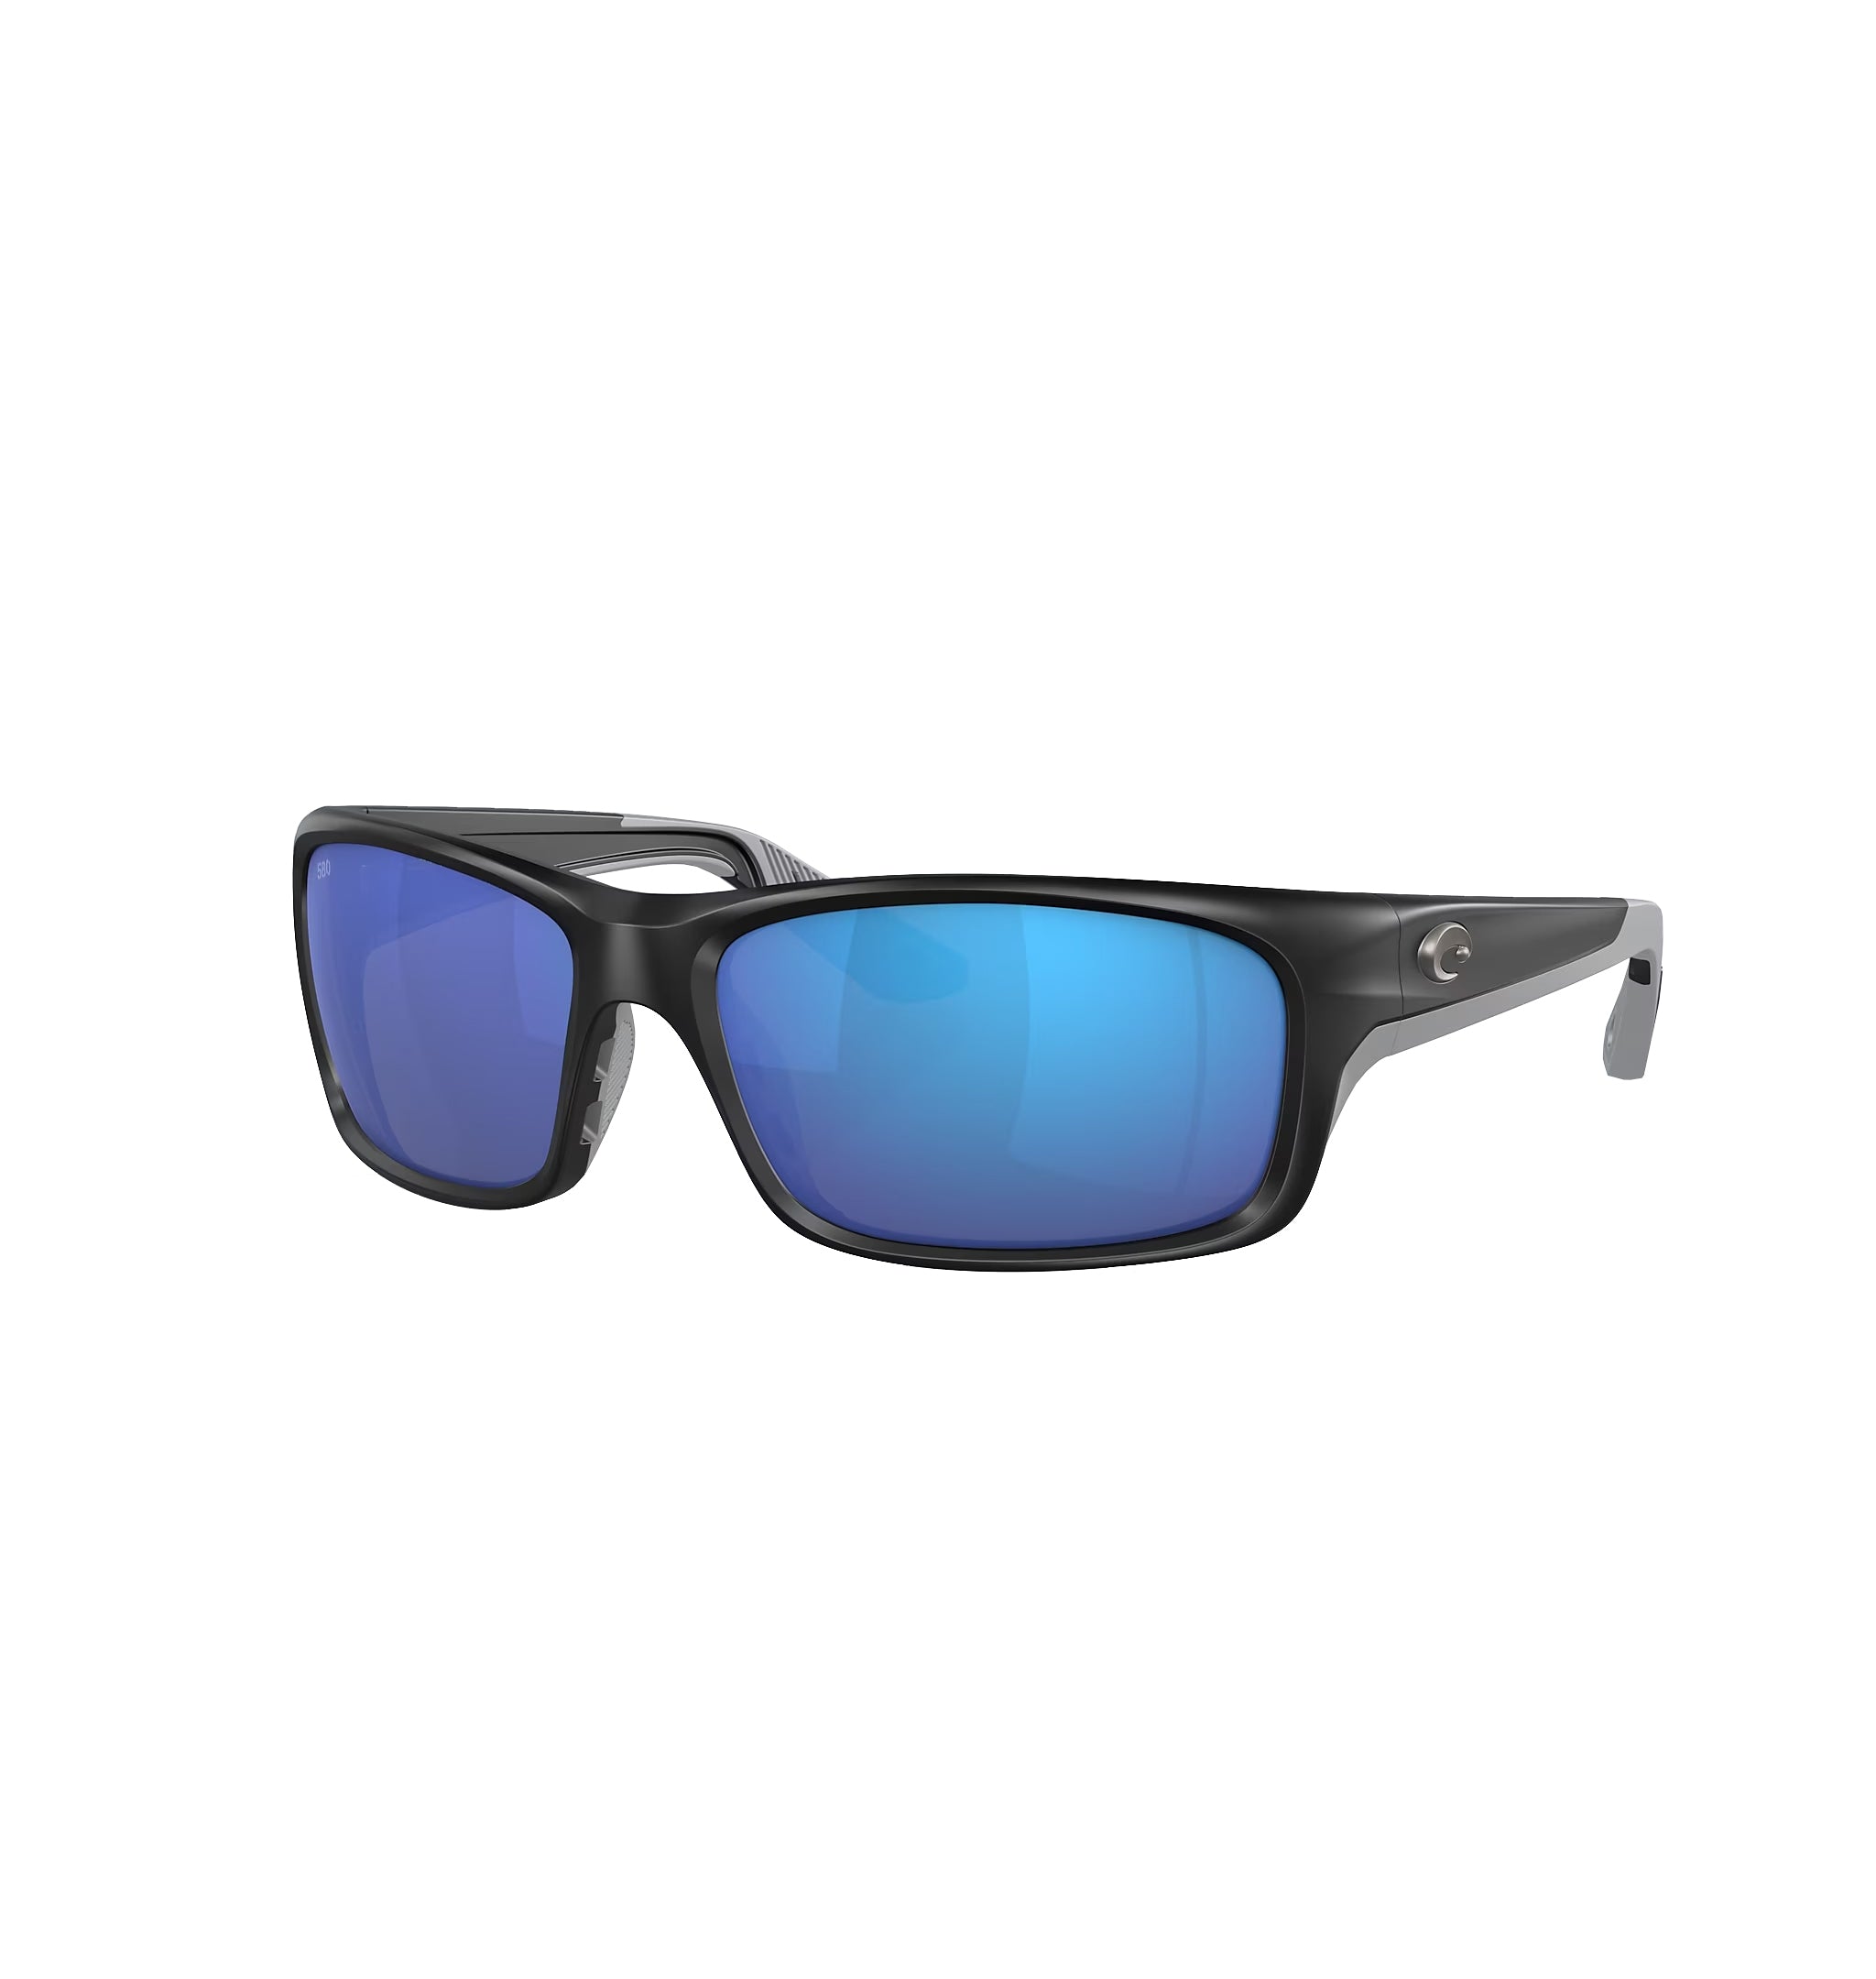 Costa Del Mar Jose Pro Polarized Sunglasses MatteBlack BlueMirror580G